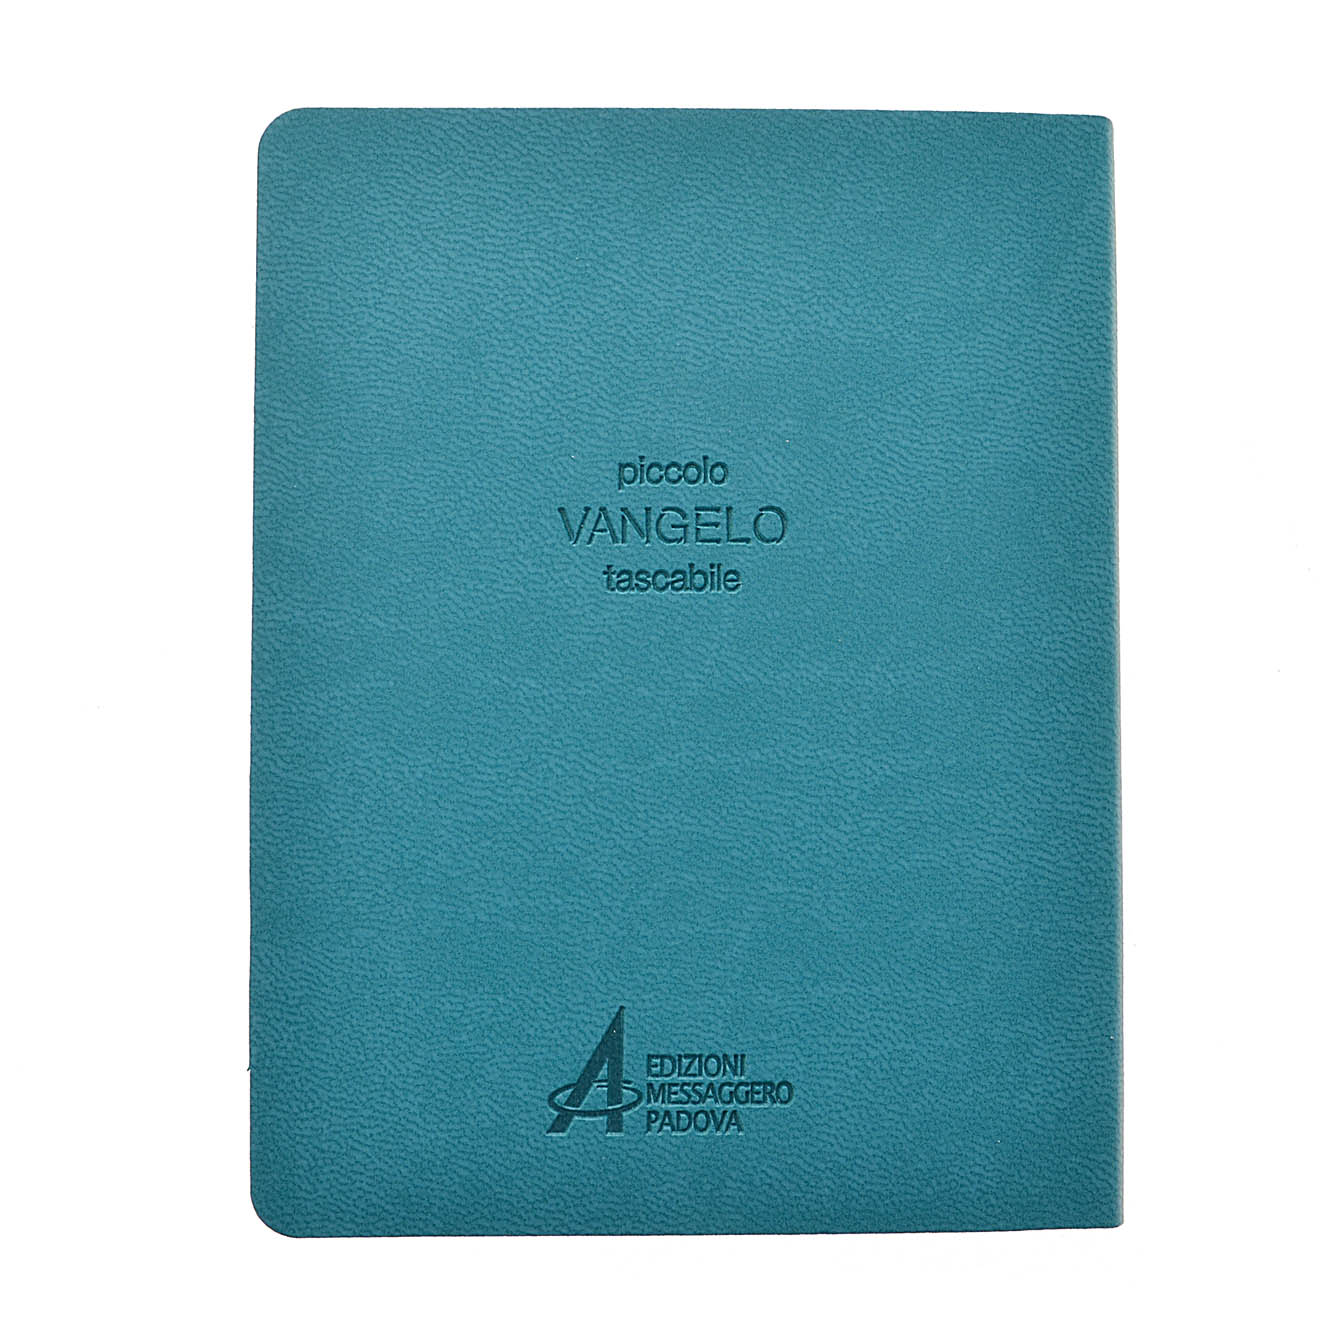 Vangelo (ediz. tascabile - Azzurro) libro, Redazione Emp, Edizioni